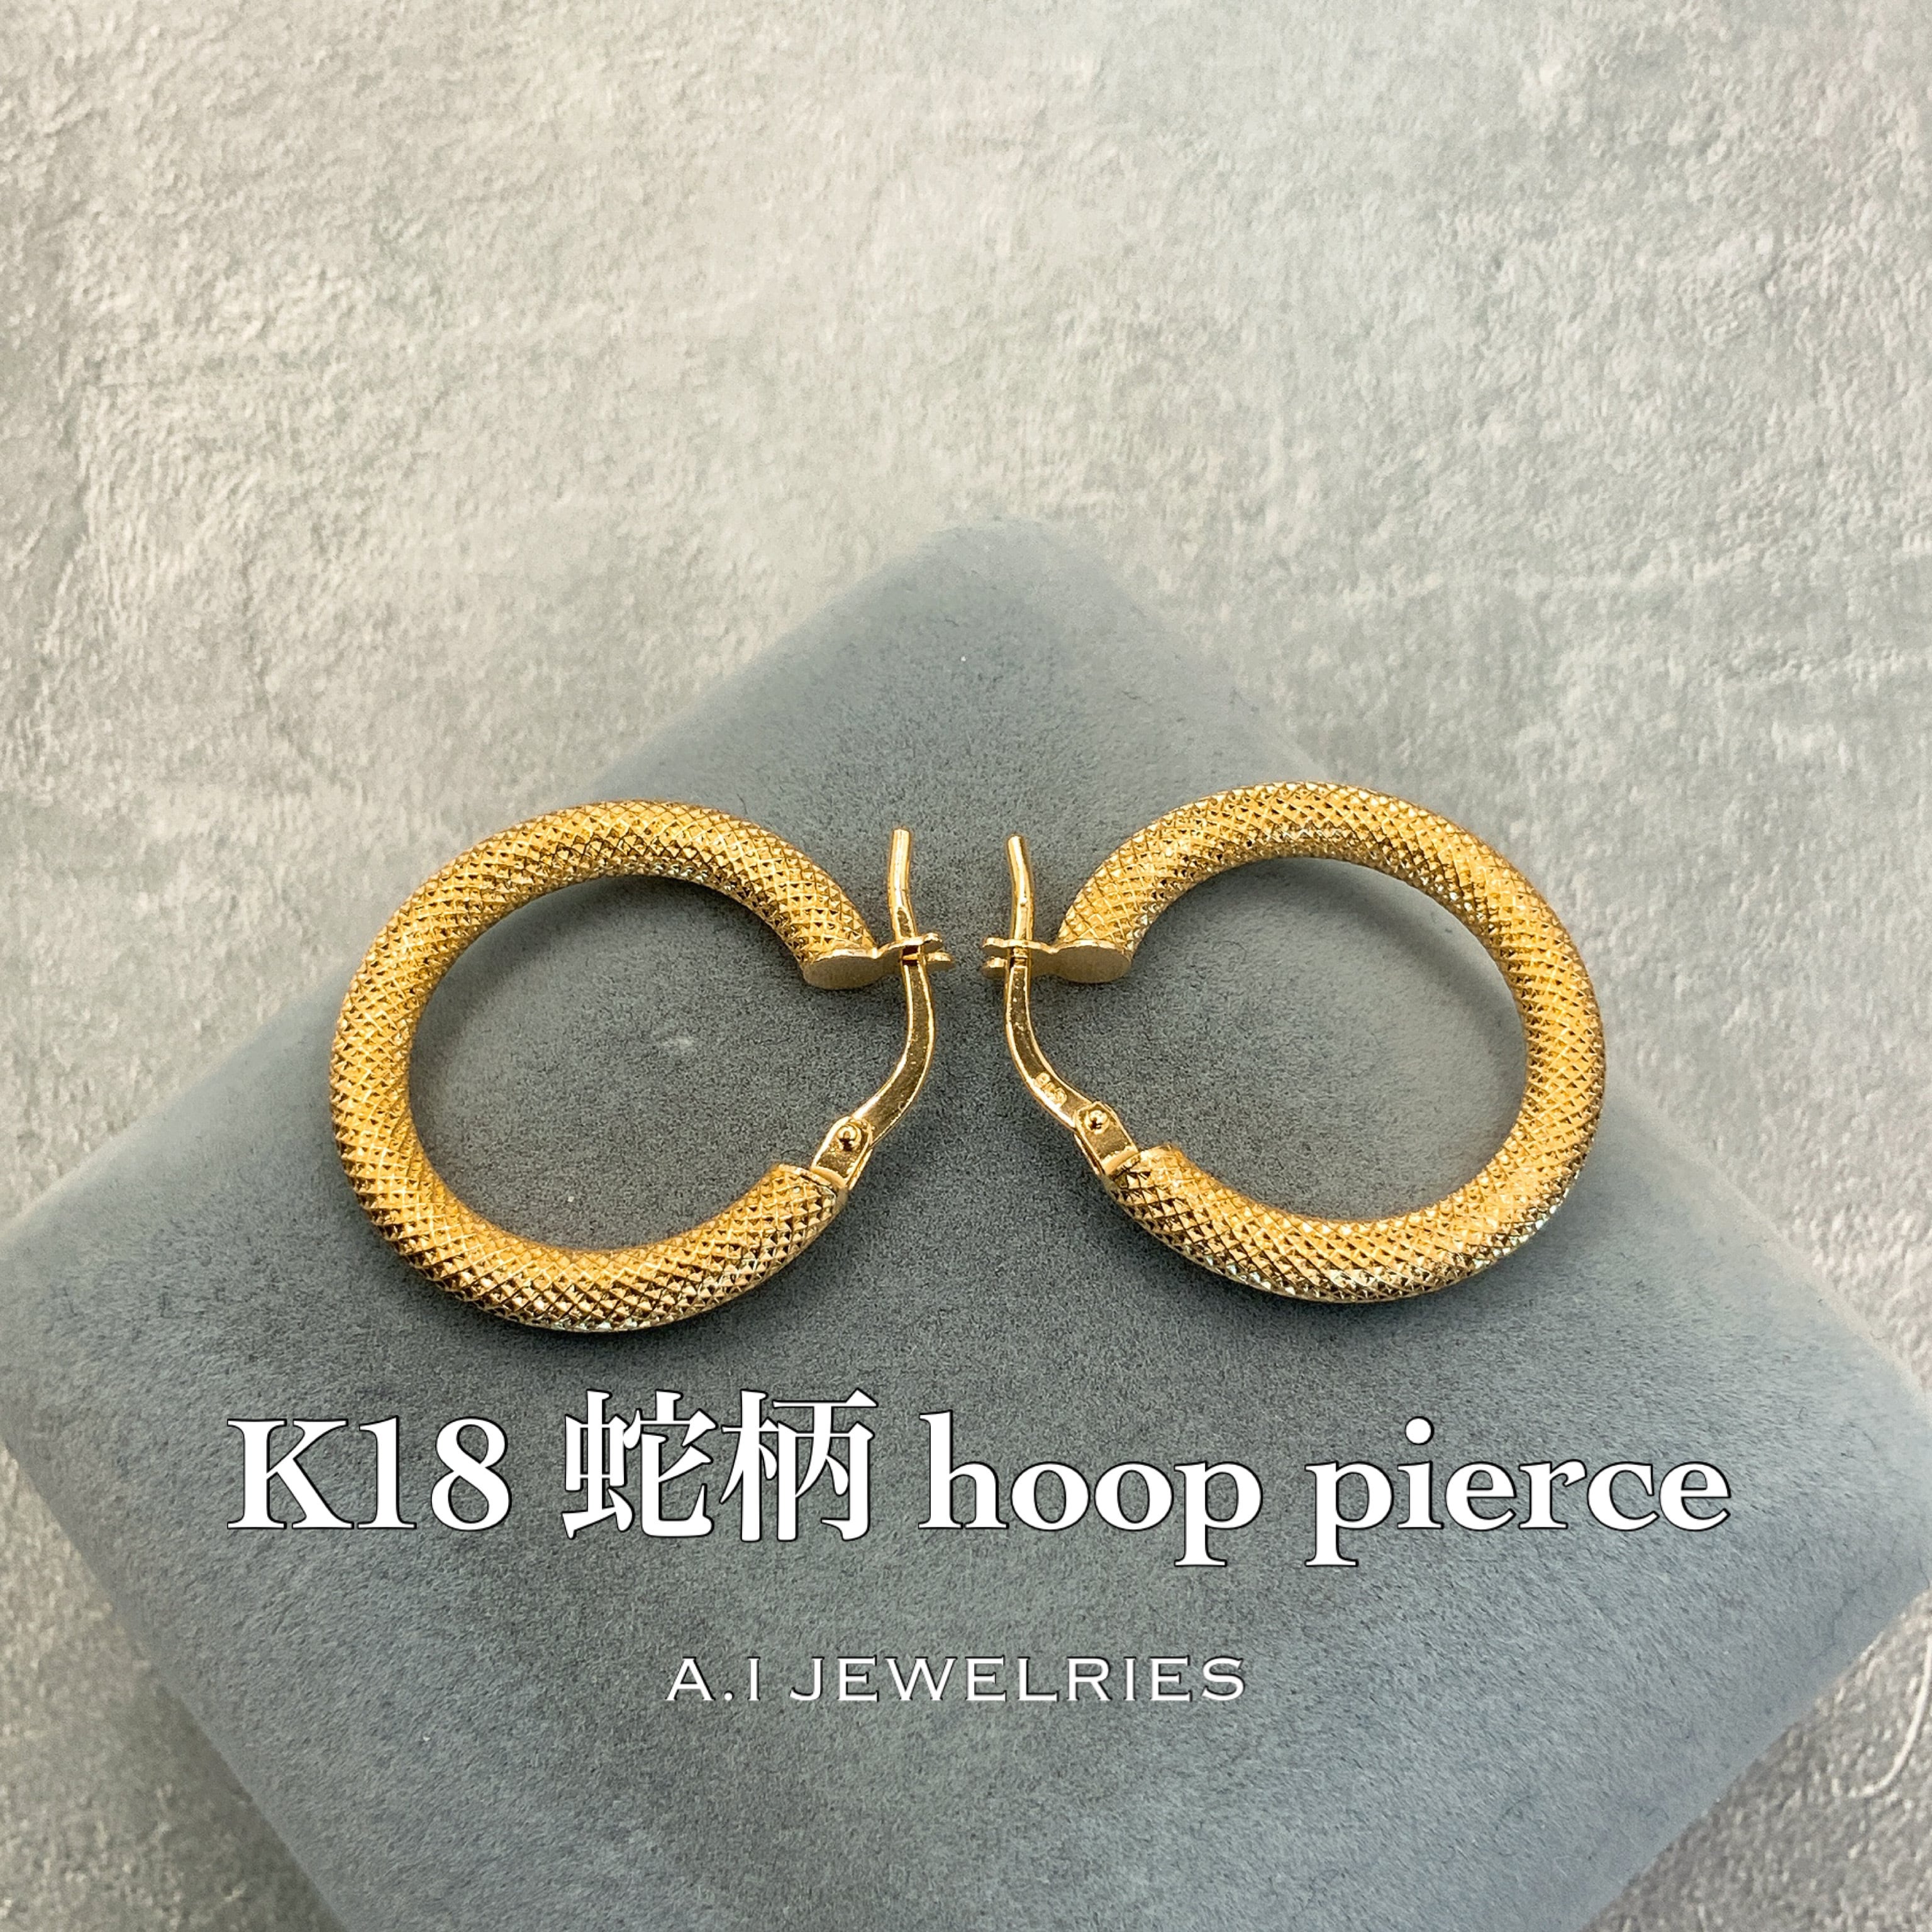 18金 K18 蛇柄 フープ ピアス K18 Snake design hoop pierce 品番 pl-303 JEWELRIES  エイアイジュエリーズ